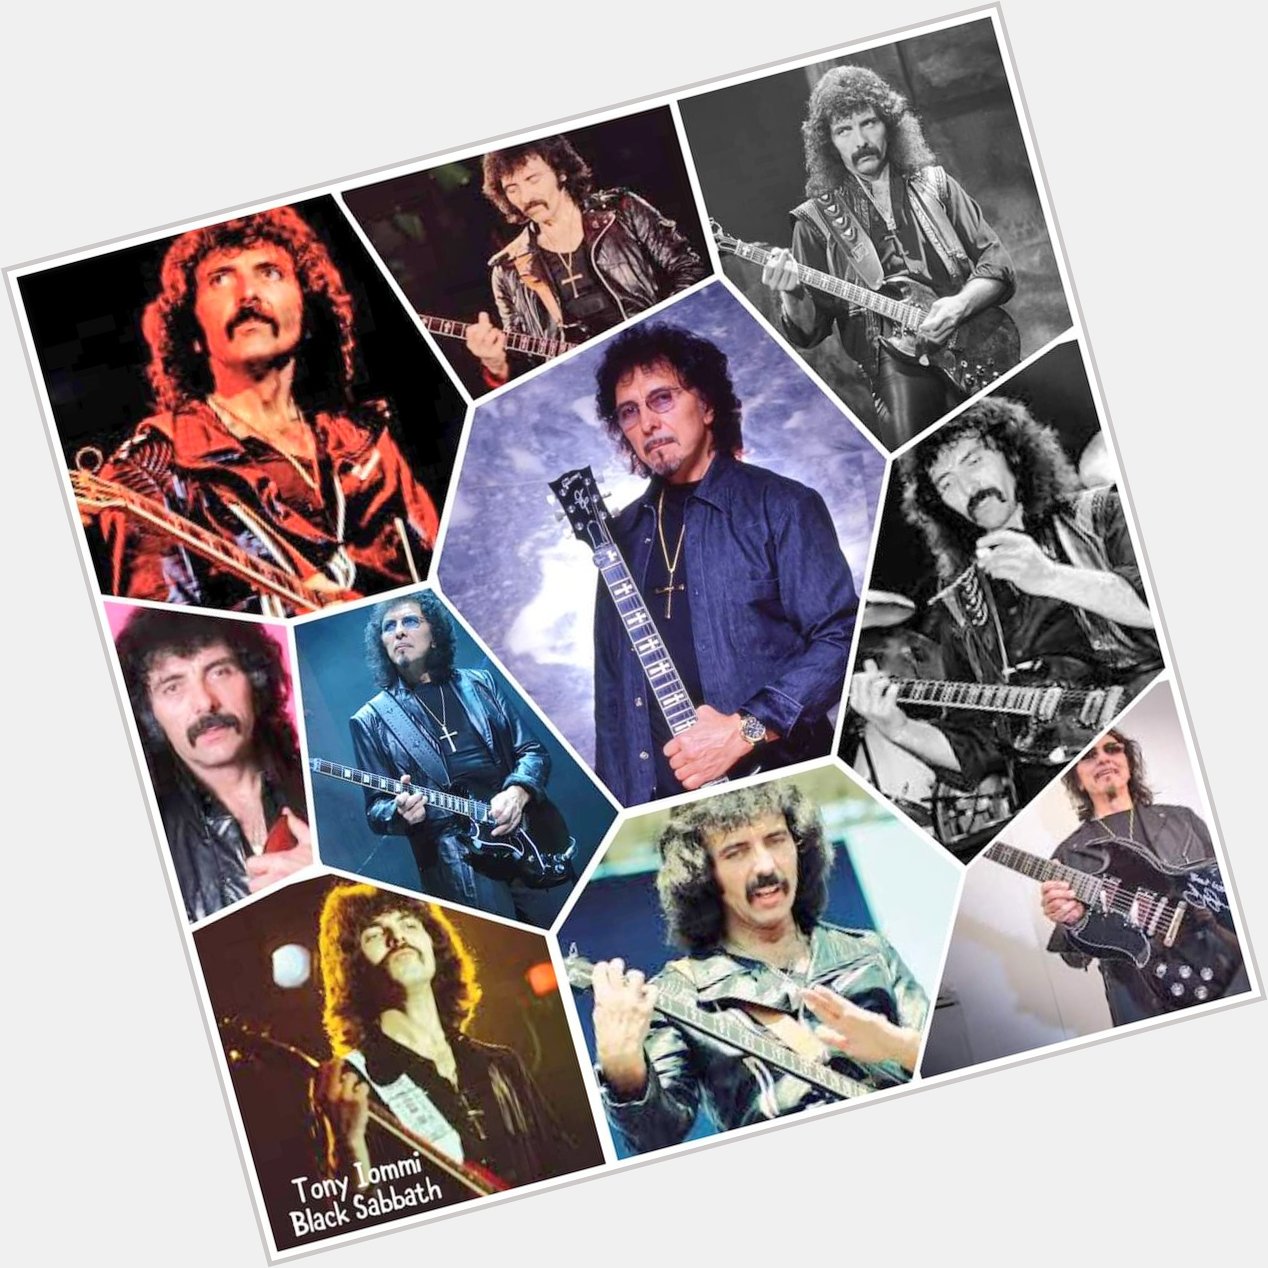 Happy birthday  Tony Iommi 75
February 19, 1948
Black Sabbath 